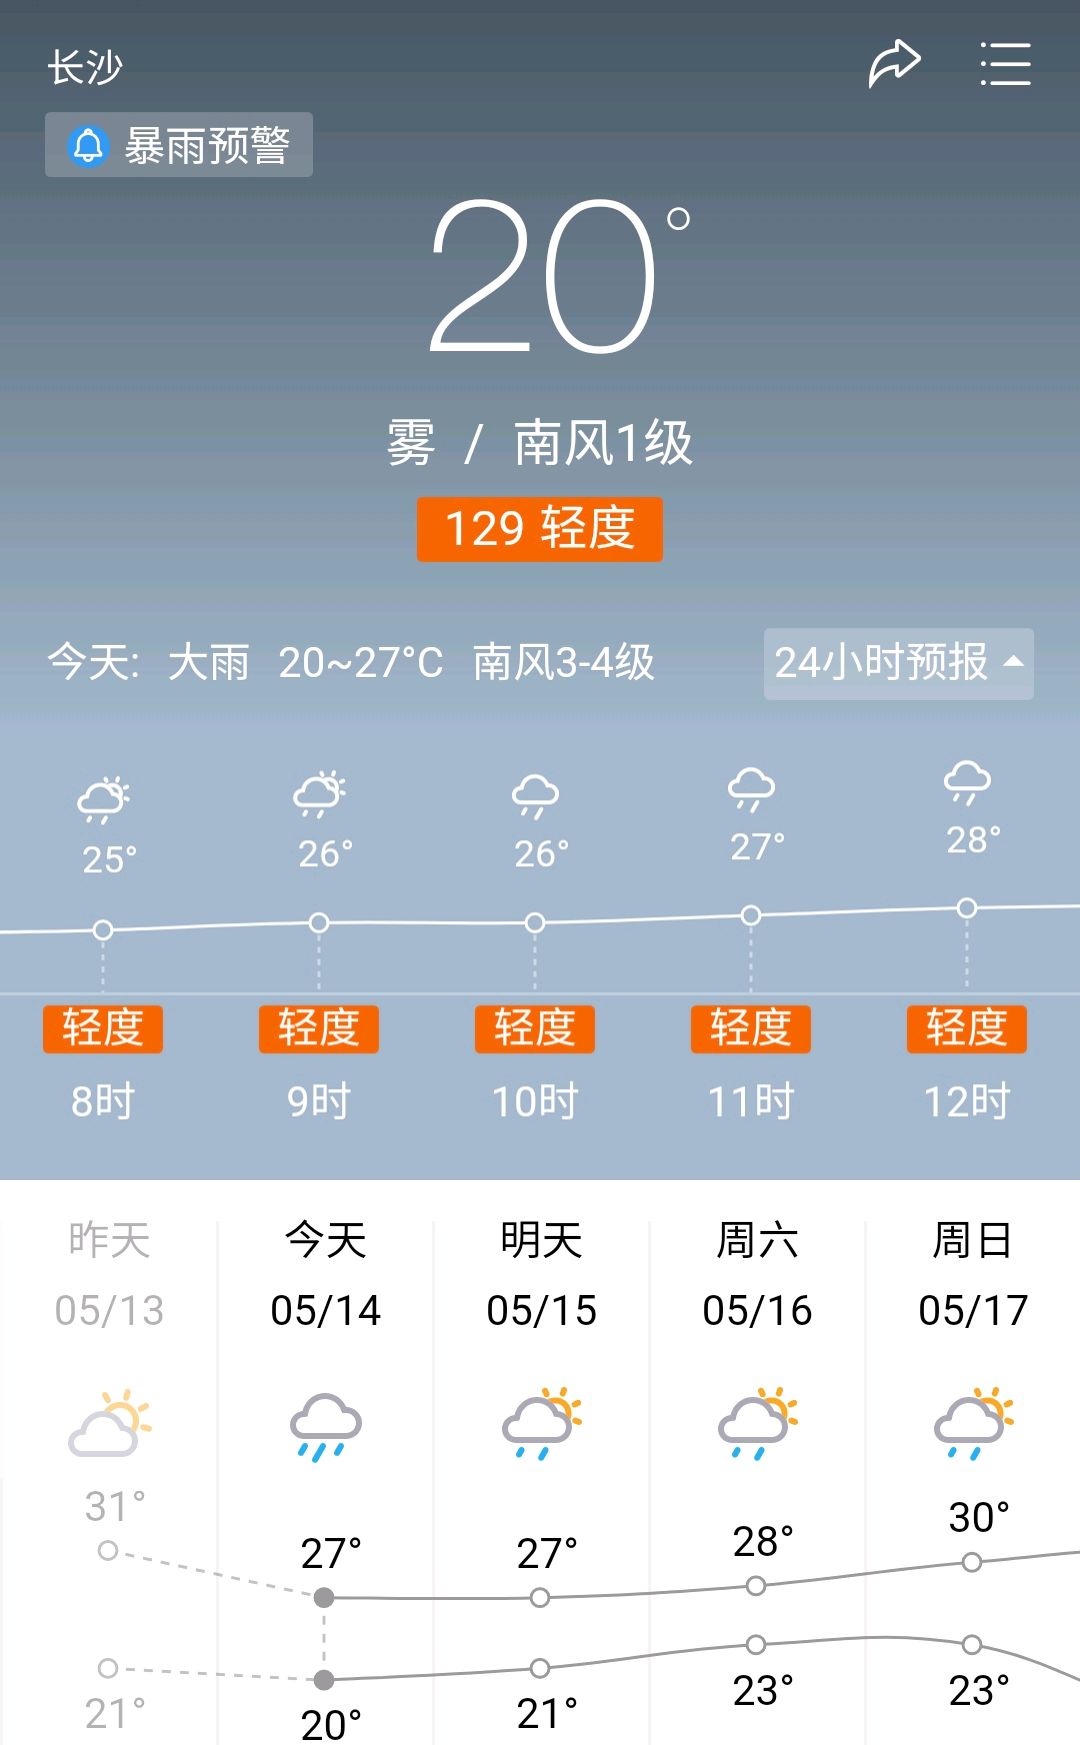 长沙:今日(5月14日)天气预报,今日大雨!